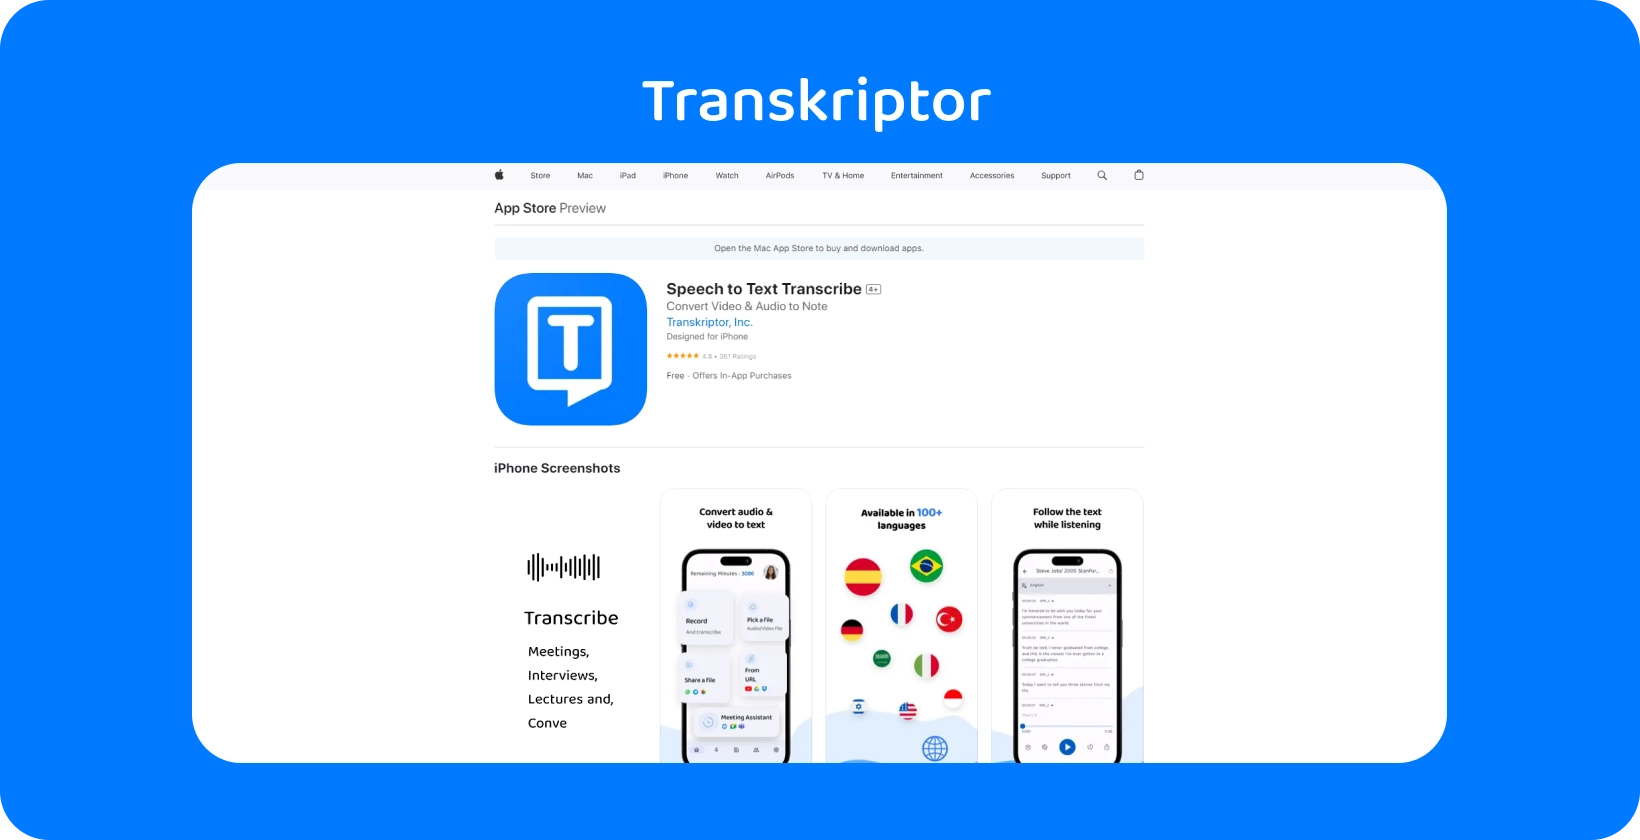 Transkriptor aplicativo foi exibido em iPhone, destacando seus recursos de transcrição de fala para texto.